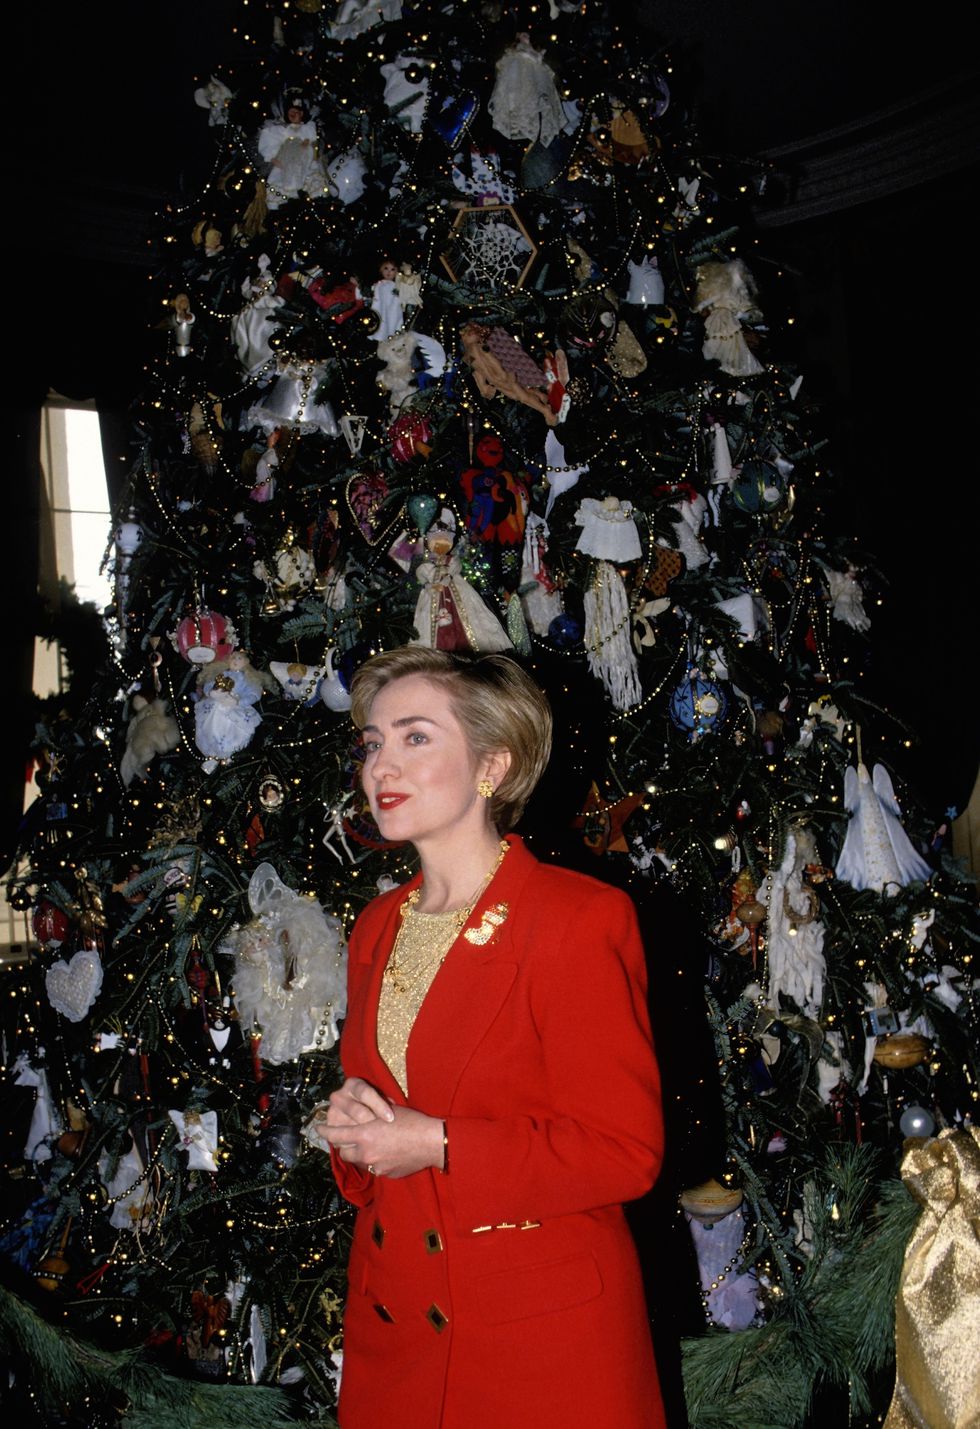 (1993) Đệ Nhất Phu nhân HiIary Clinton kết hợp đồ trang trí cổ điển và vui nhộn cho cây thông cao gần 6 m trong Giáng sinh đầu tiên ở Nhà Trắng. Ảnh: Getty Images.